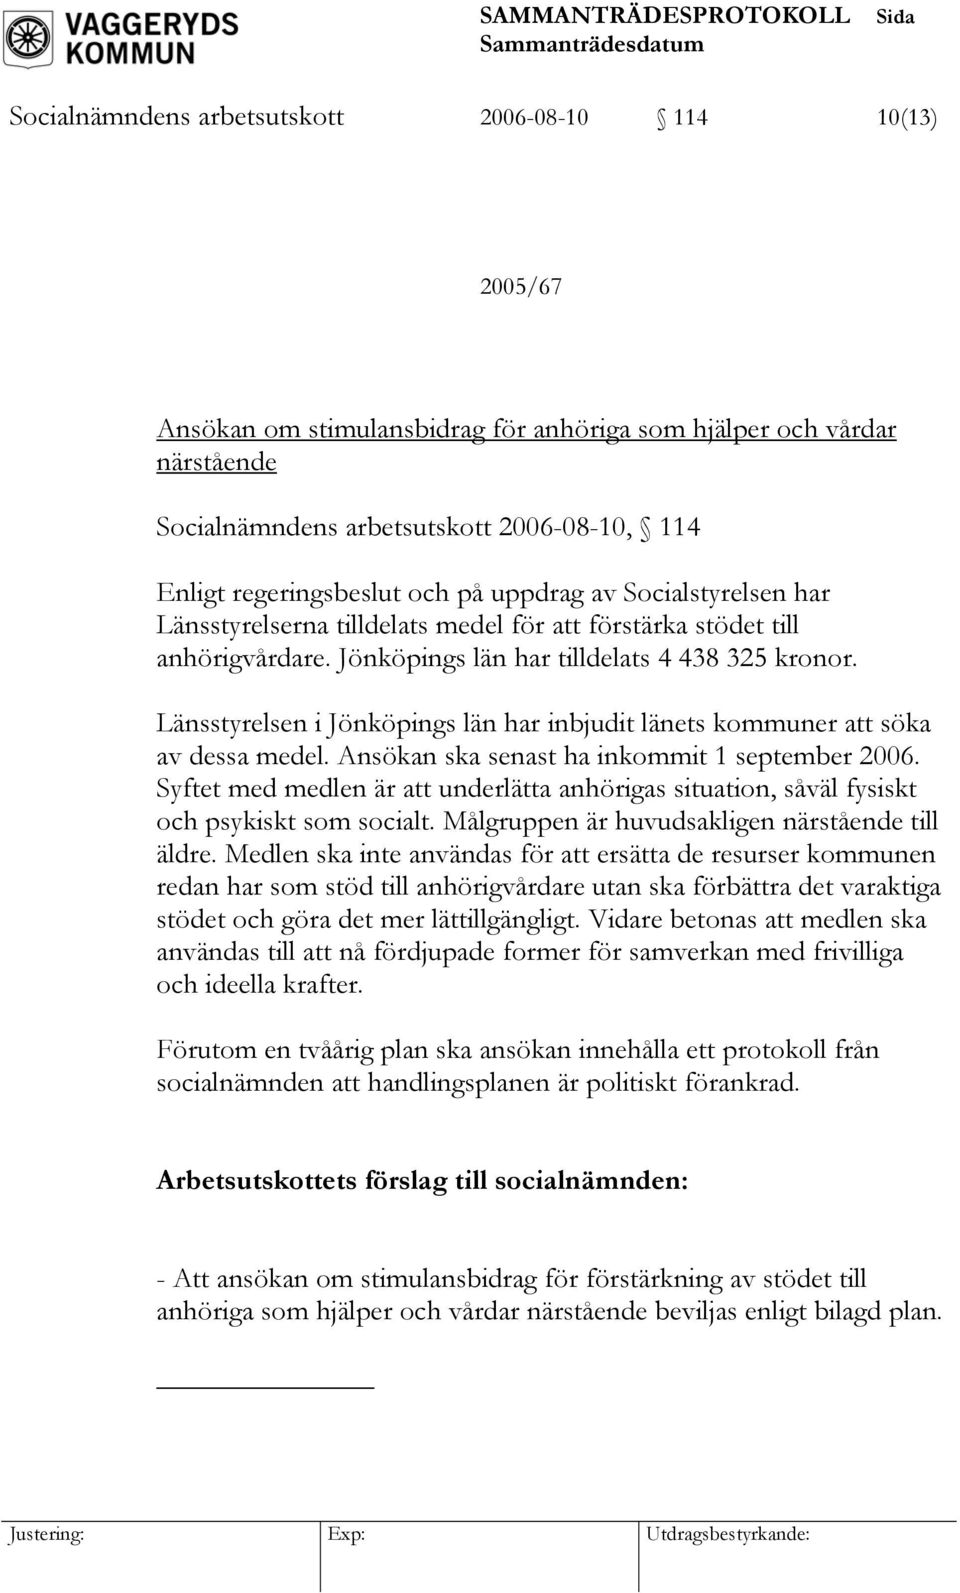 Länsstyrelsen i Jönköpings län har inbjudit länets kommuner att söka av dessa medel. Ansökan ska senast ha inkommit 1 september 2006.